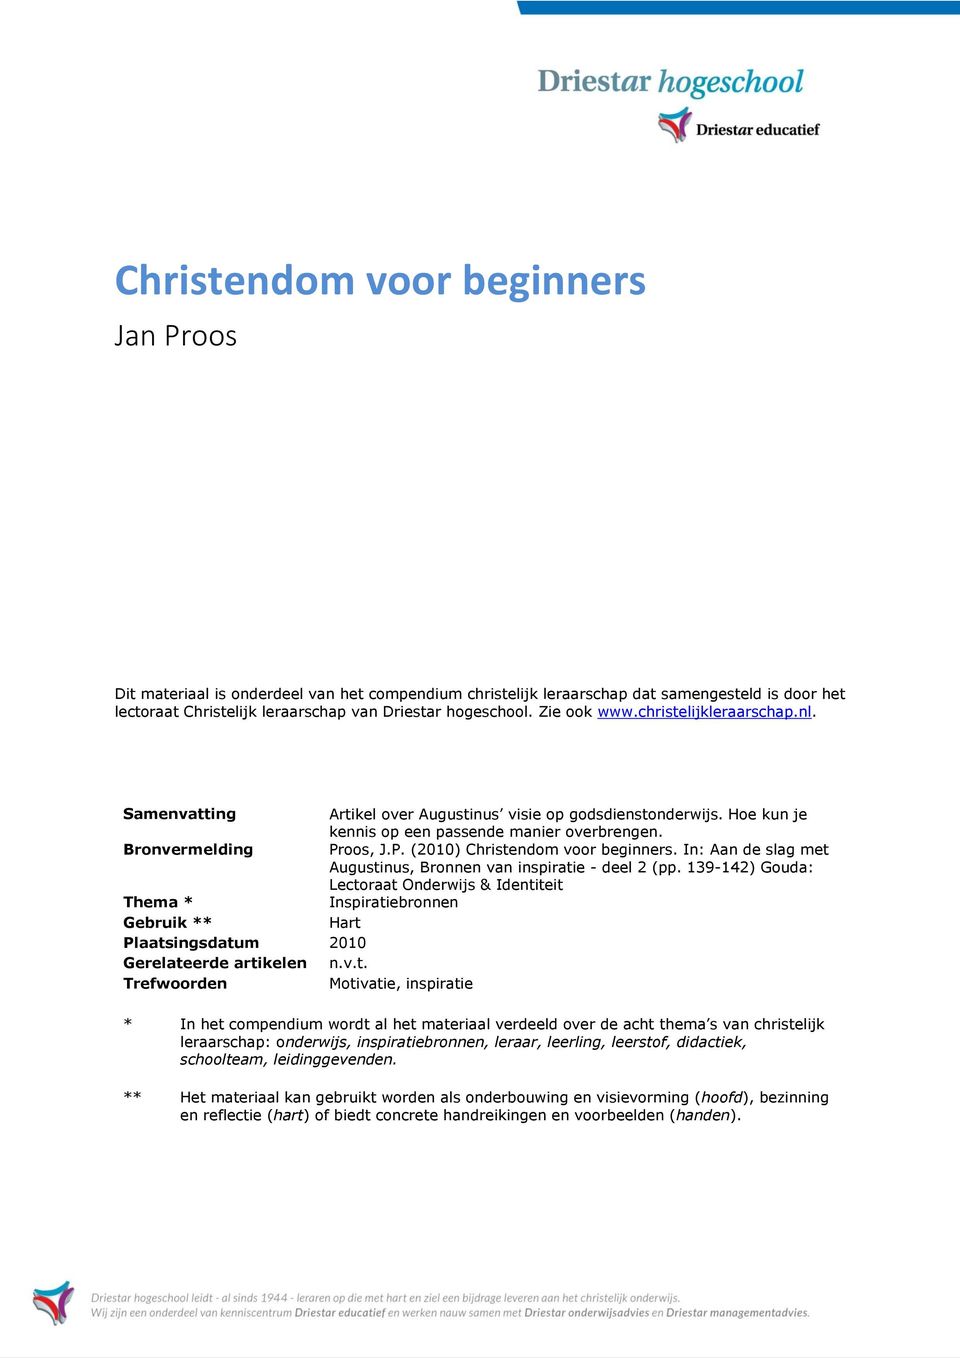 oos, J.P. (2010) Christendom voor beginners. In: Aan de slag met Augustinus, Bronnen van inspiratie - deel 2 (pp.